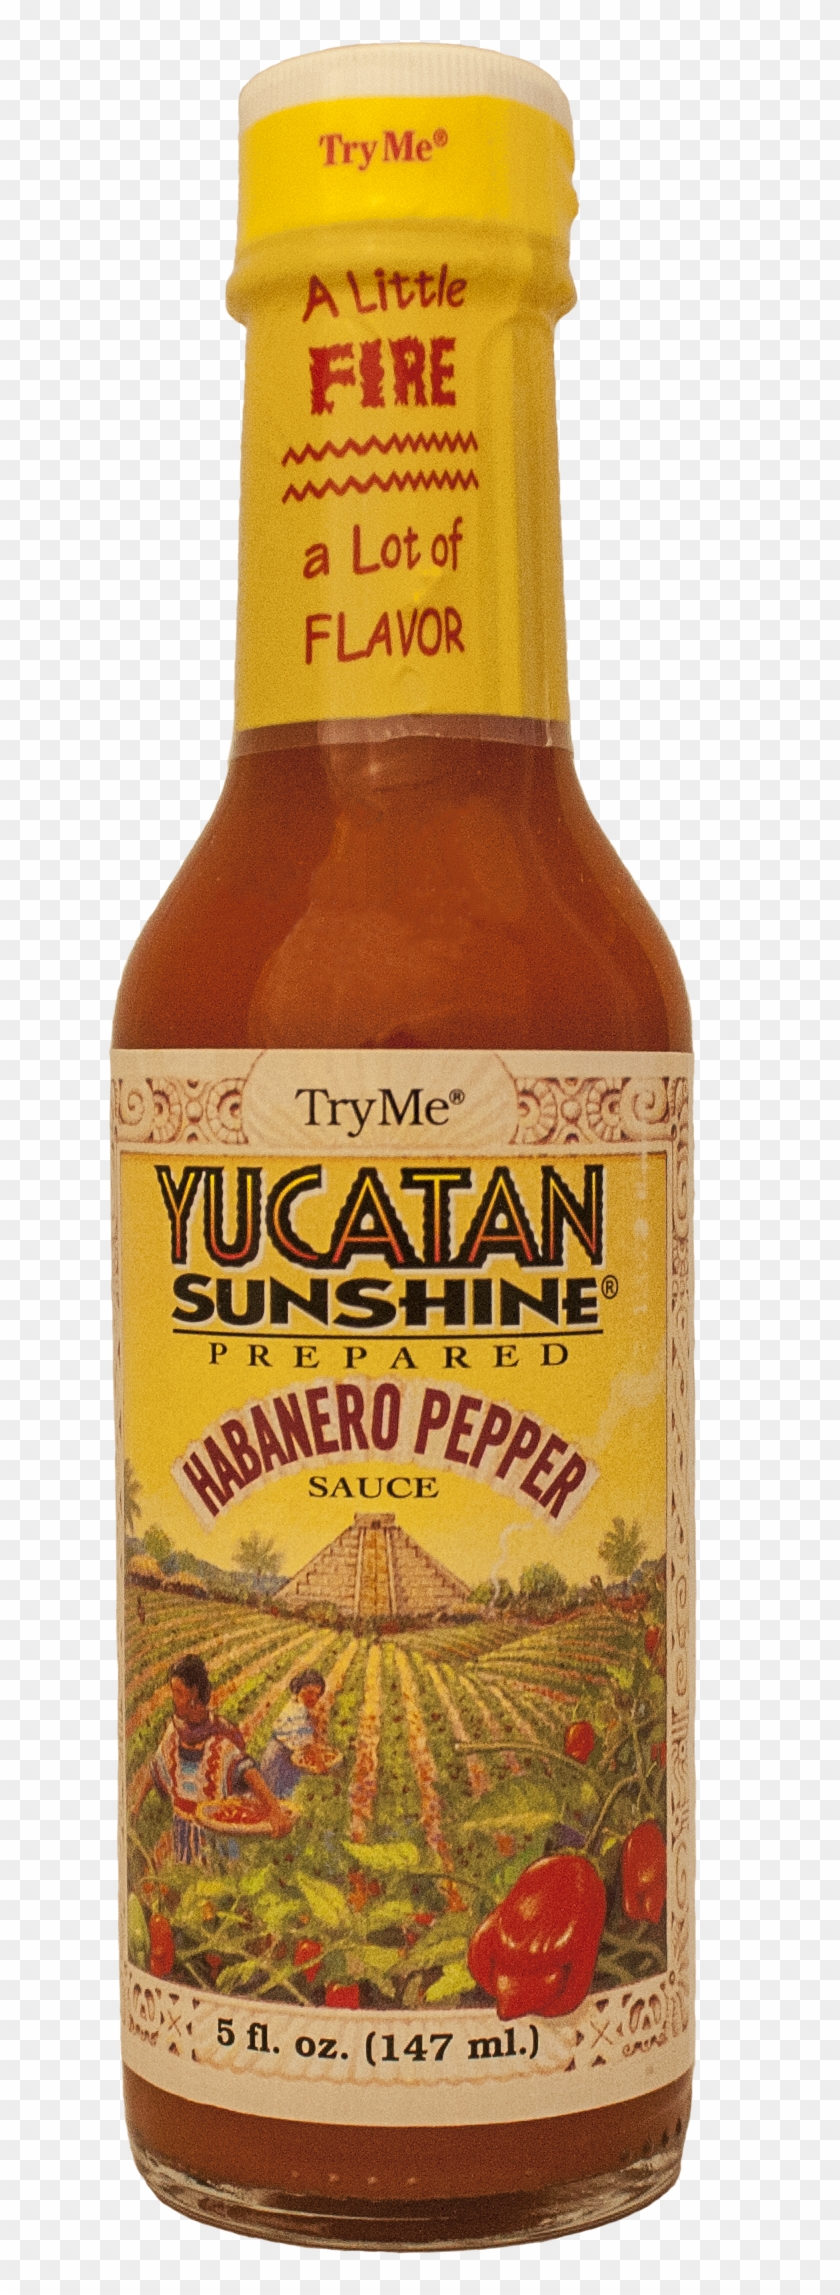 Tryme Yucatan Sunshine Habanero Pepper Sauce 5 Oz - Yucatan Sunshine Clipart #5447044